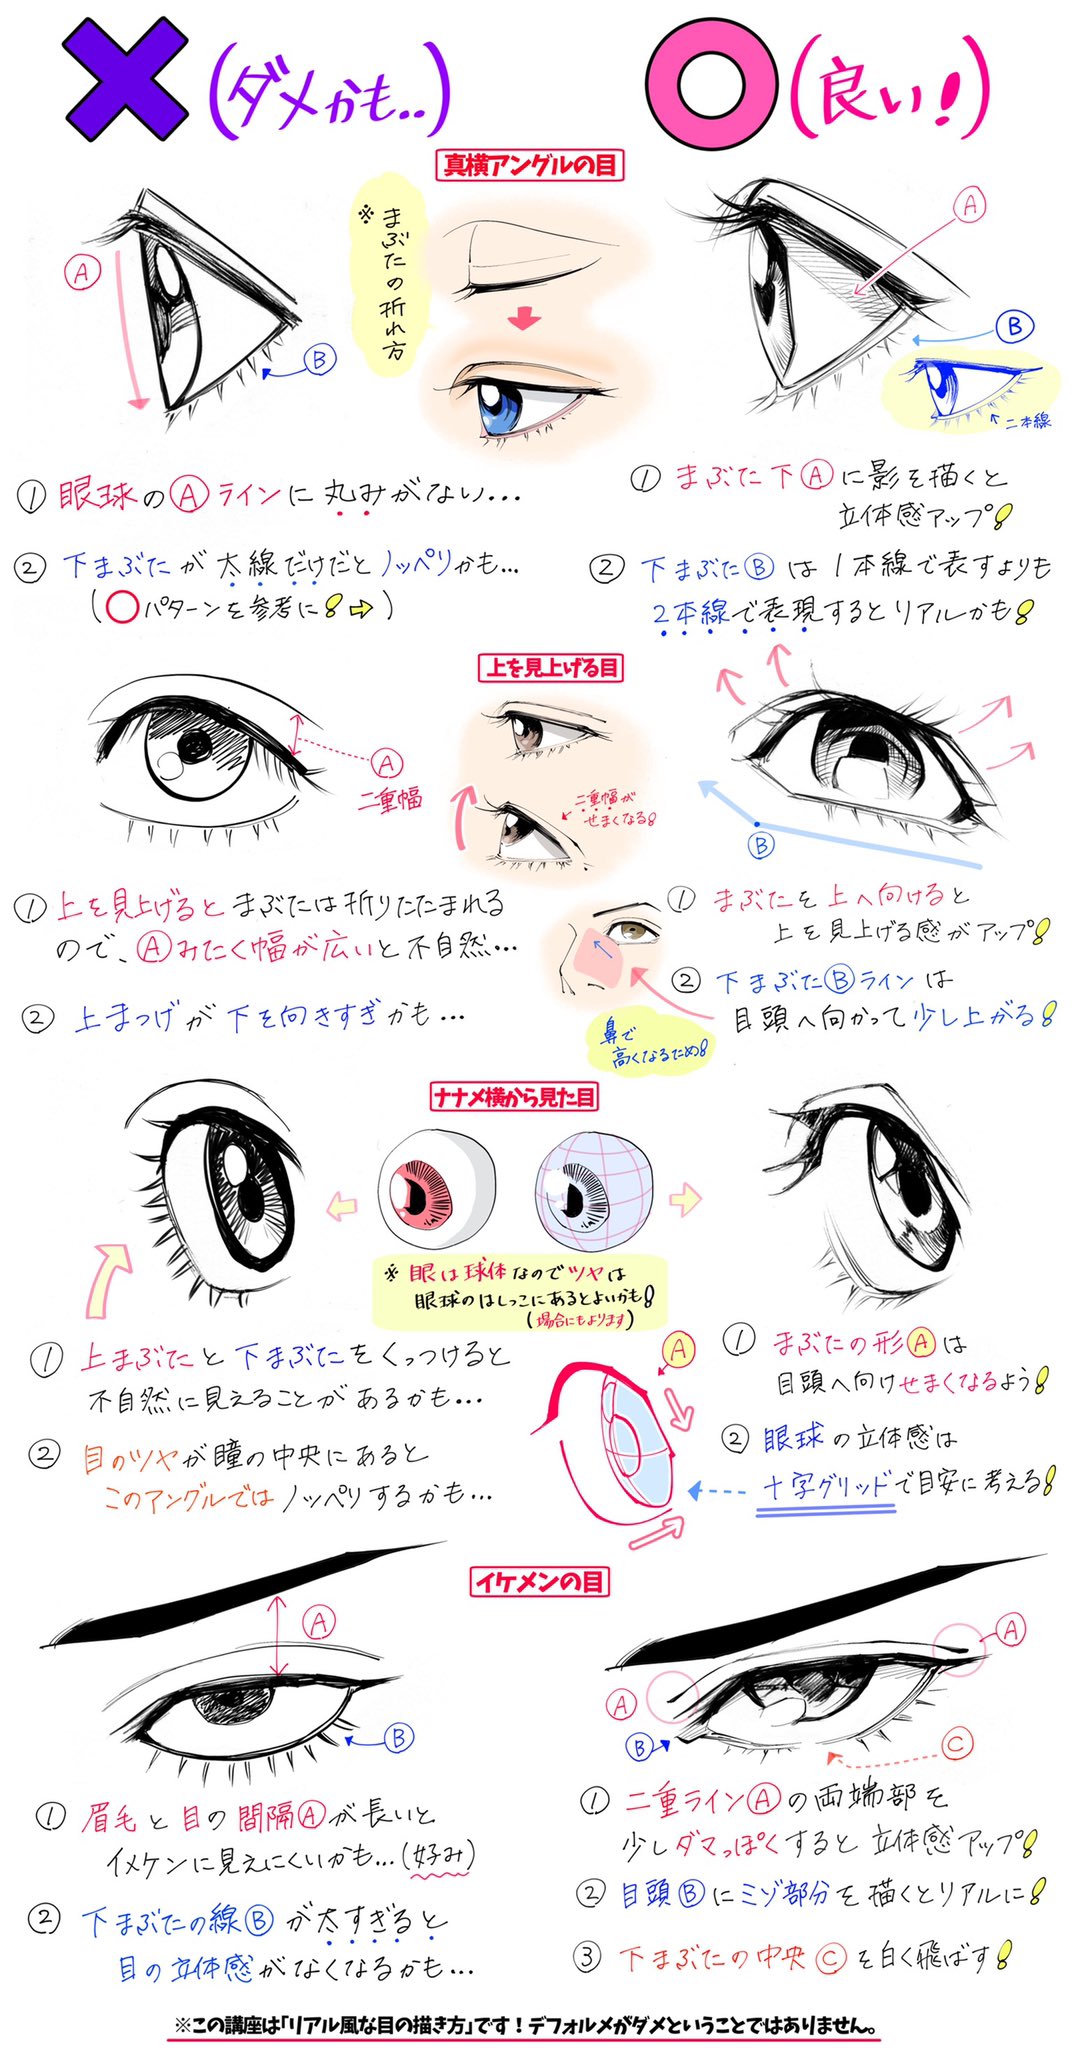 吉村拓也 イラスト講座 目の描き方が苦手な人へ 目の角度や瞳のツヤ感 が上達する ダメかも と いいかも T Co Fyzx1tnjwn Twitter